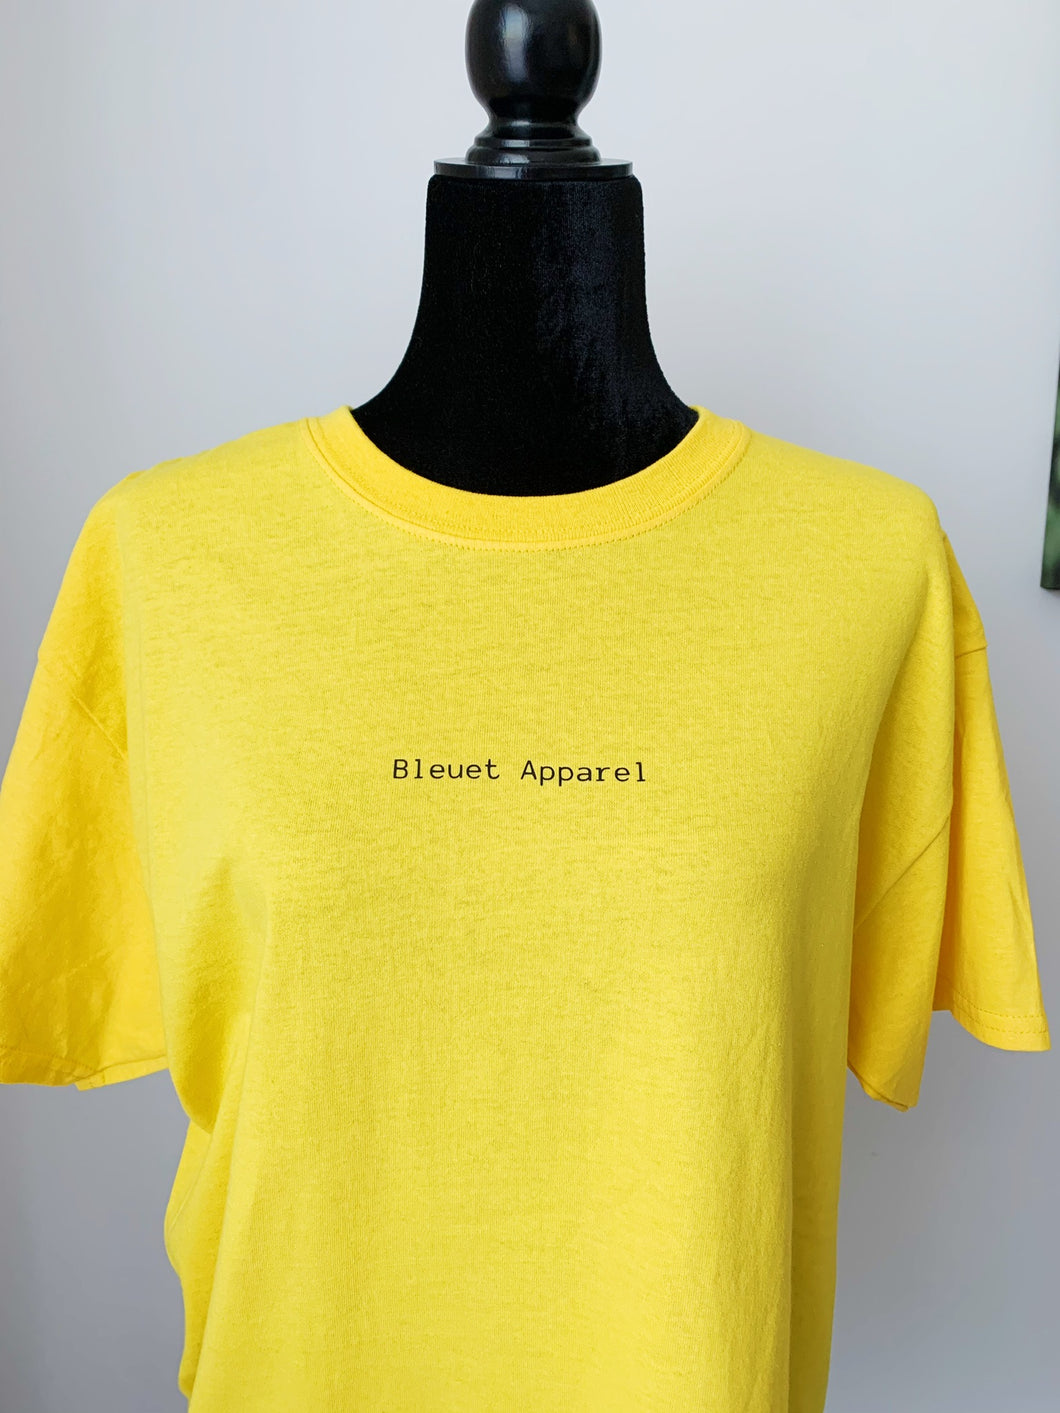 T-shirt jaune Bleuet Apparel